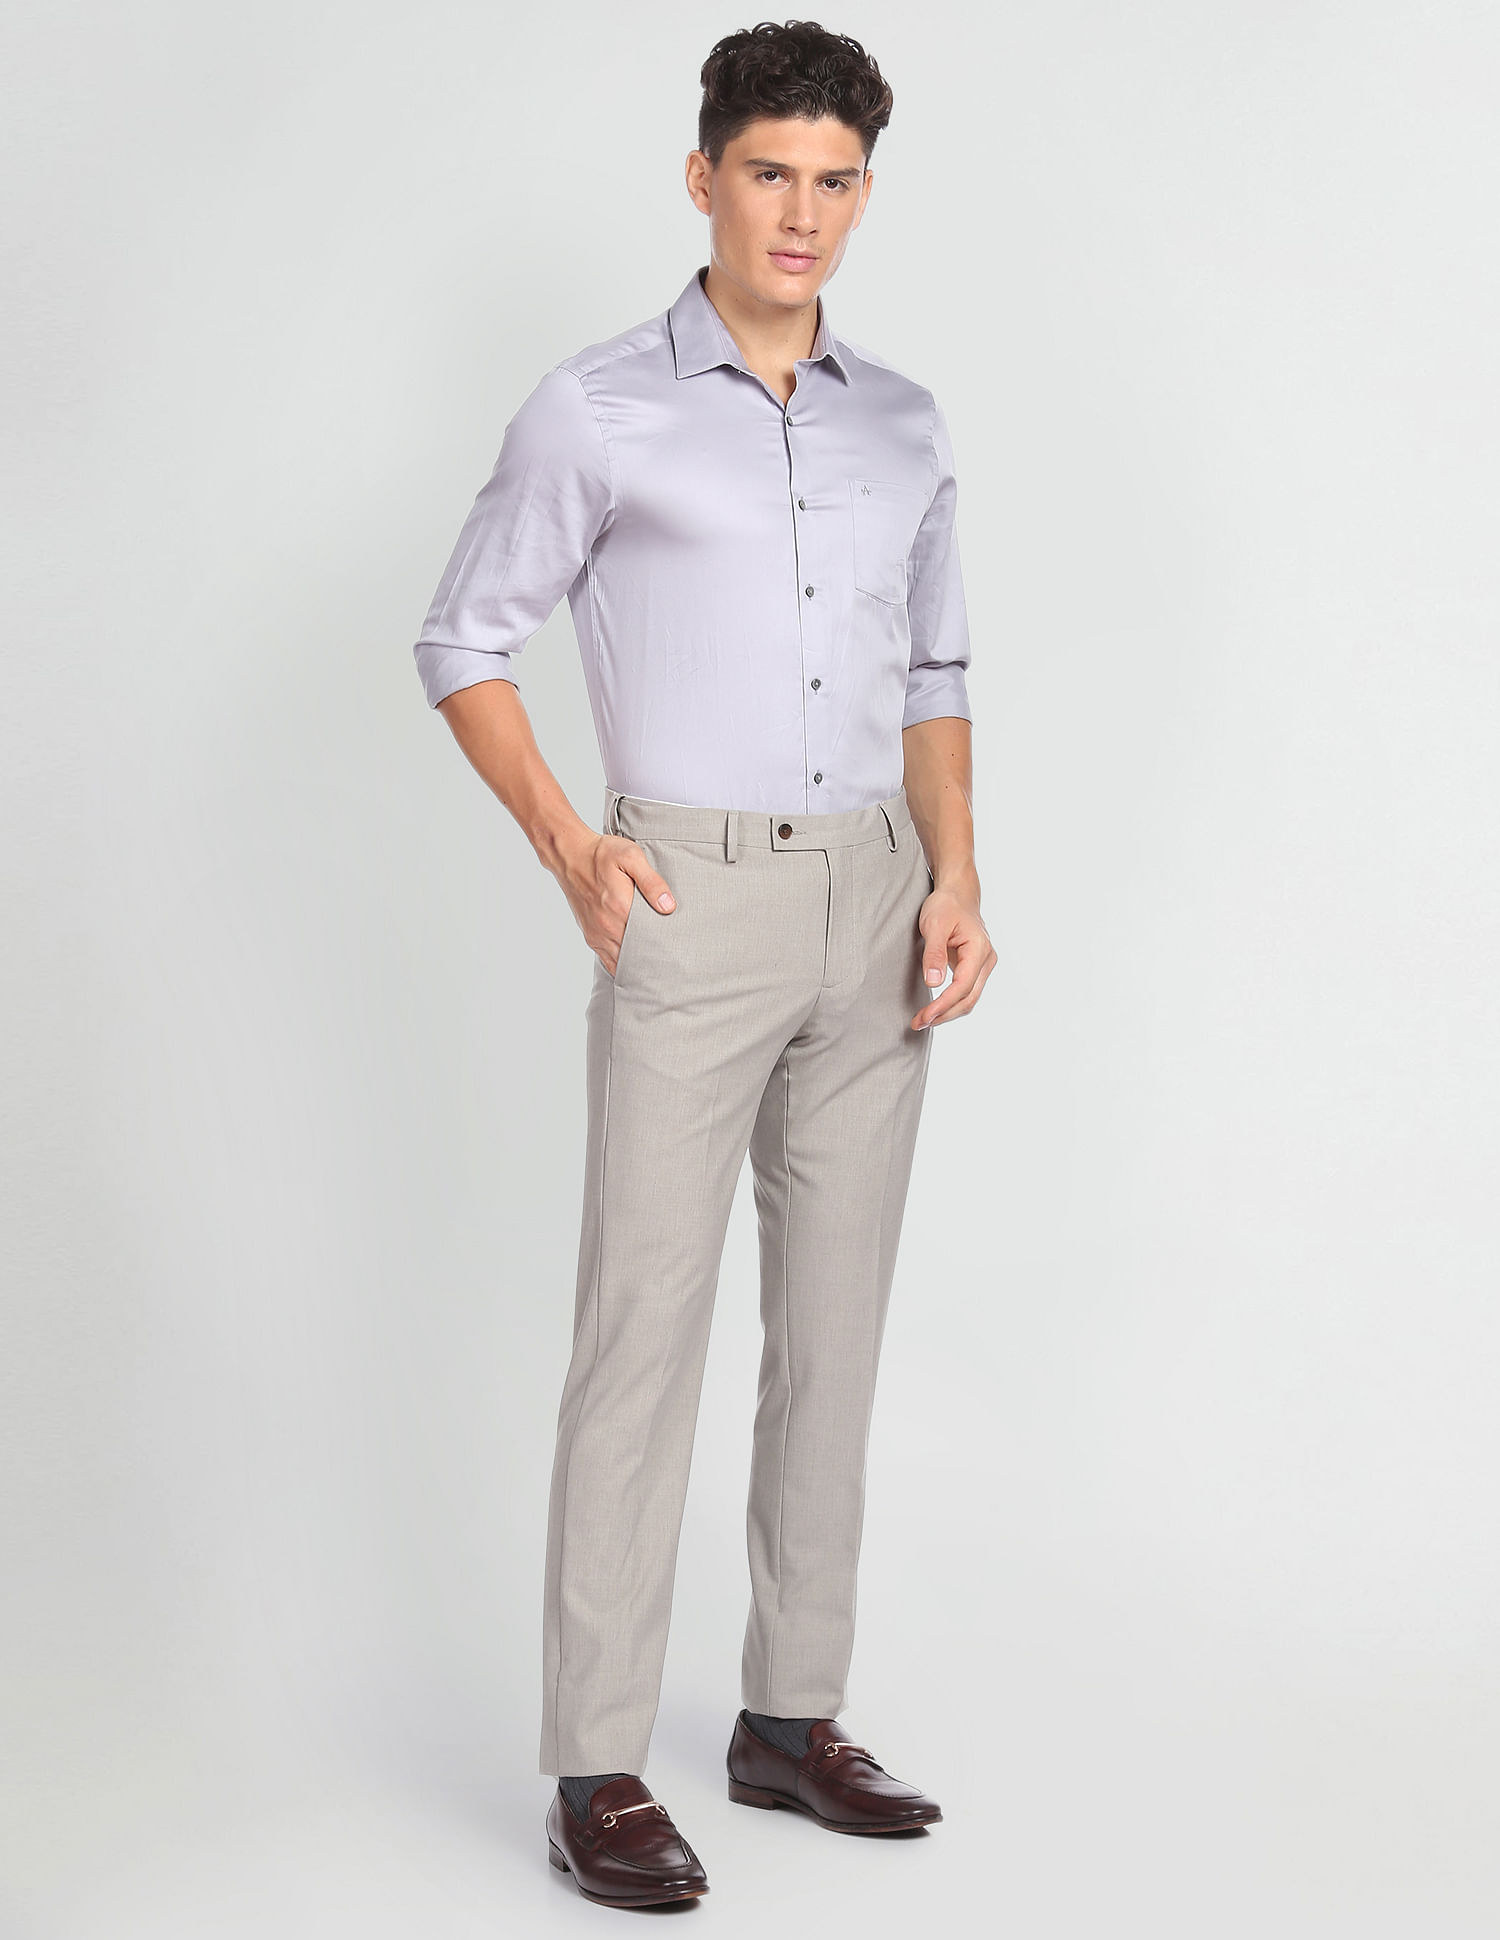 Men's Formal Trousers - Buy Trouser Pants Online for Men – Westside-mncb.edu.vn